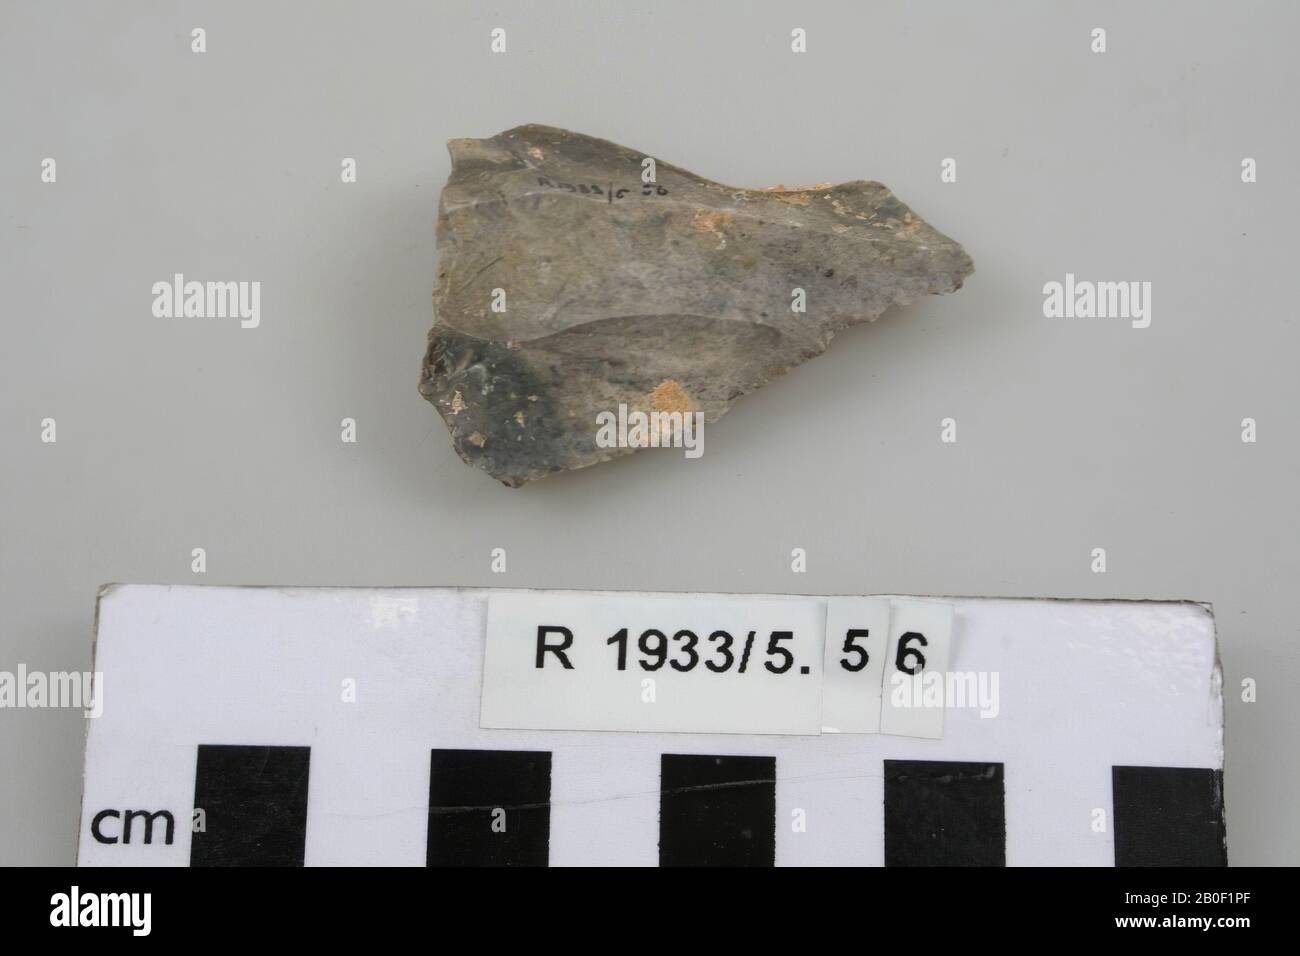 Herramienta Flint, herramienta, piedra, Flint, 1,3 x 5,2 x 4 cm, prehistoria, Francia, desconocido, desconocido, les Eyzies Abri Chad Foto de stock